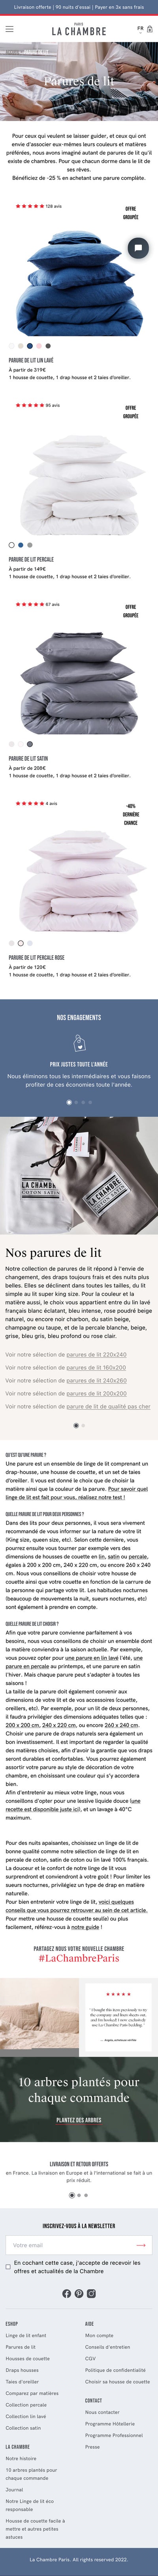 La Chambre Paris - Page Collection - Mobile